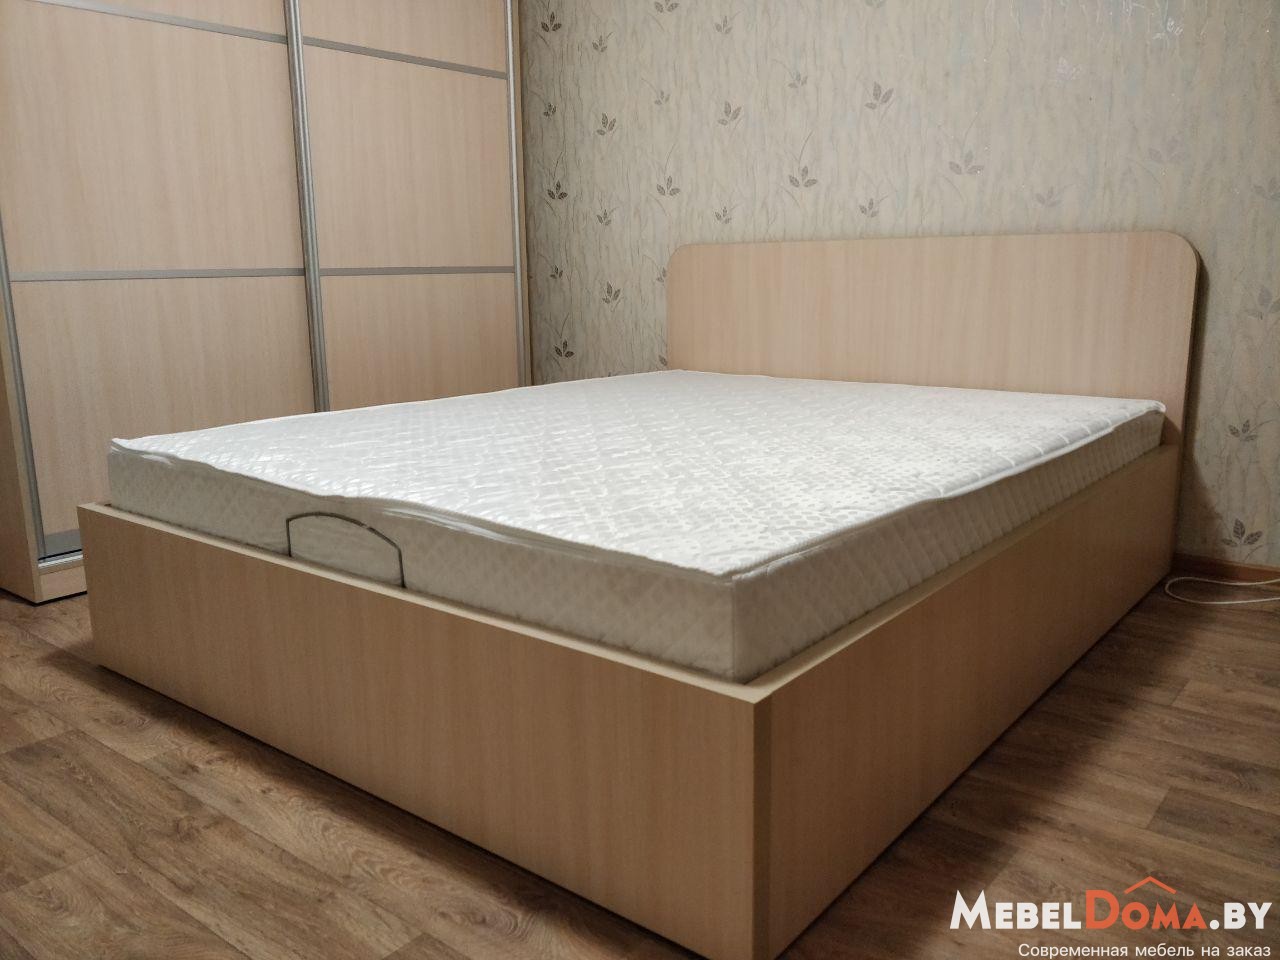 Кровати из ДСП - Интернет магазин мебели RoomDepot